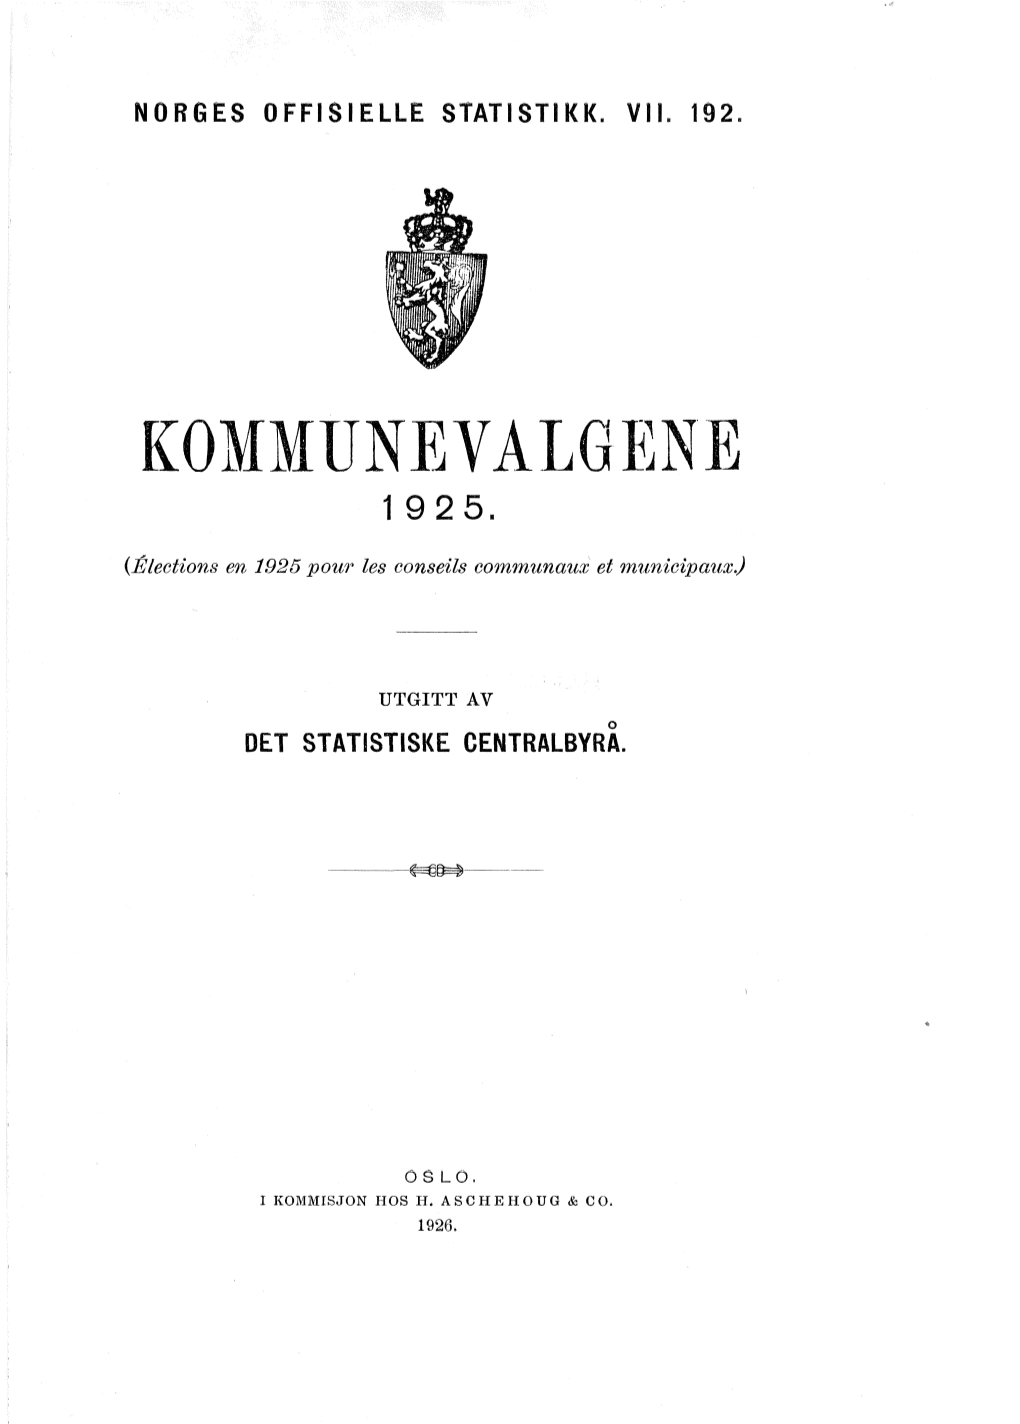 Kommunevalgene 1925